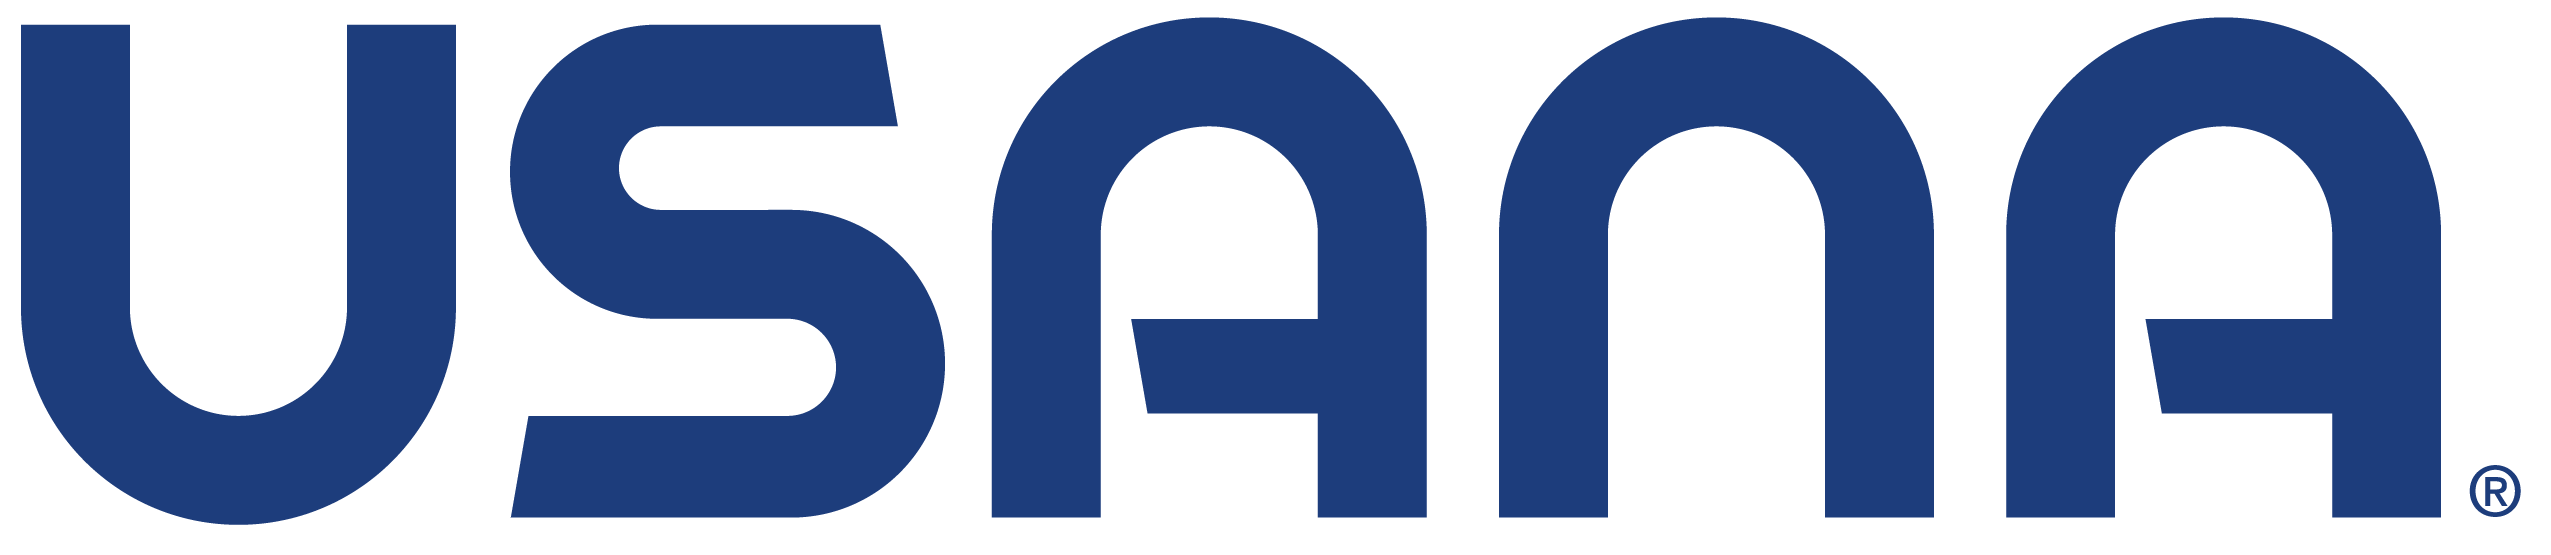 Usana logo